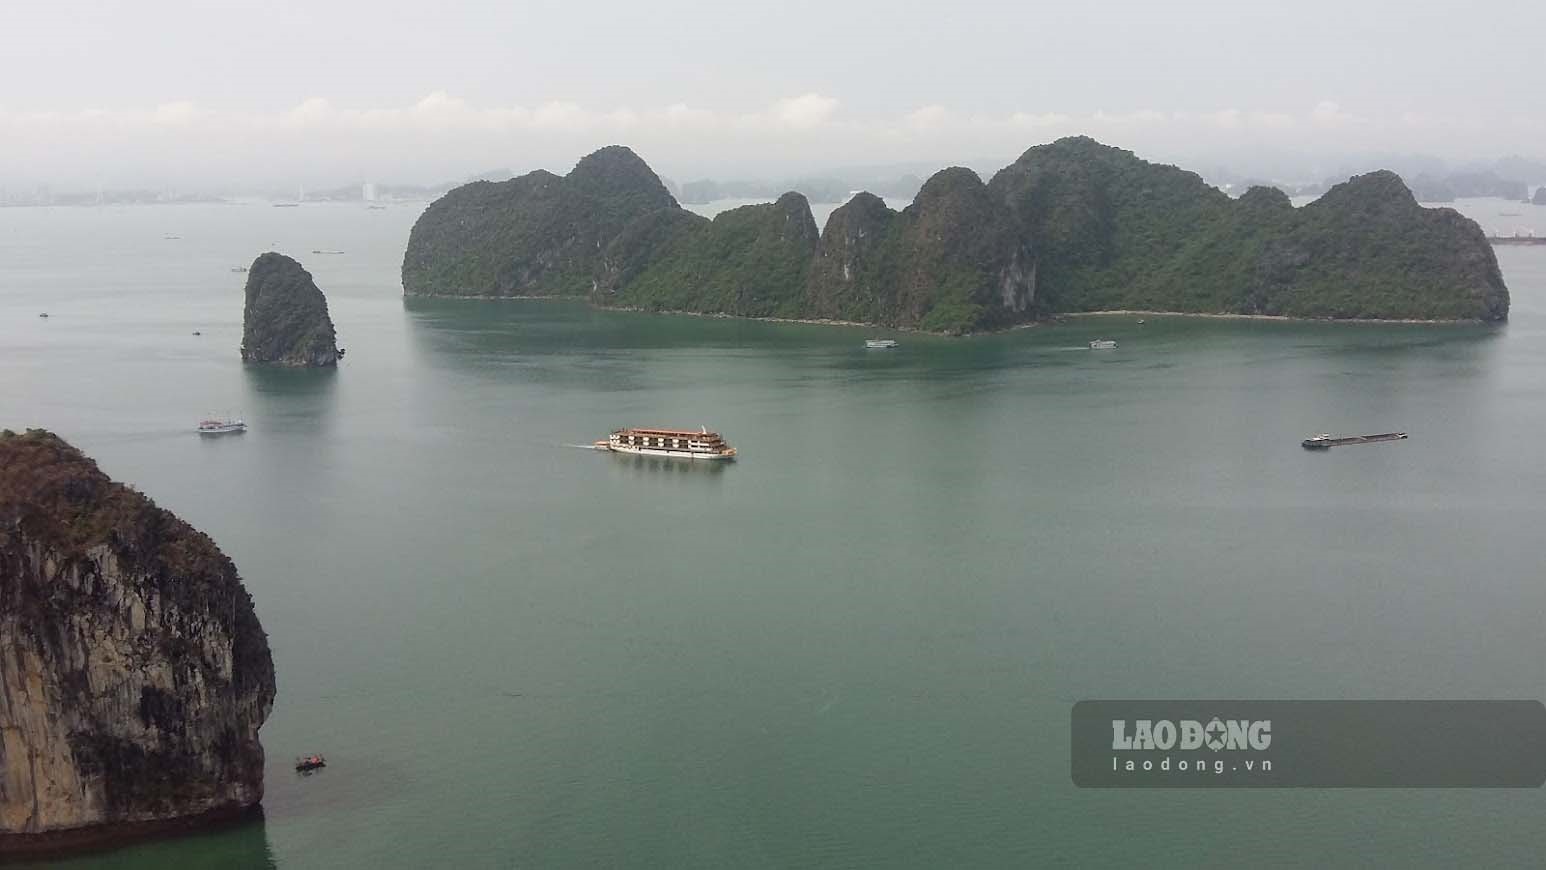 Bay trực thăng ngắm vịnh là một trong những tour du lịch cao cấp ở Quảng Ninh. Ảnh chụp từ trên máy bay trực thăng Bell-505, số hiệu VN-8650. Ảnh: Nguyễn Hùng